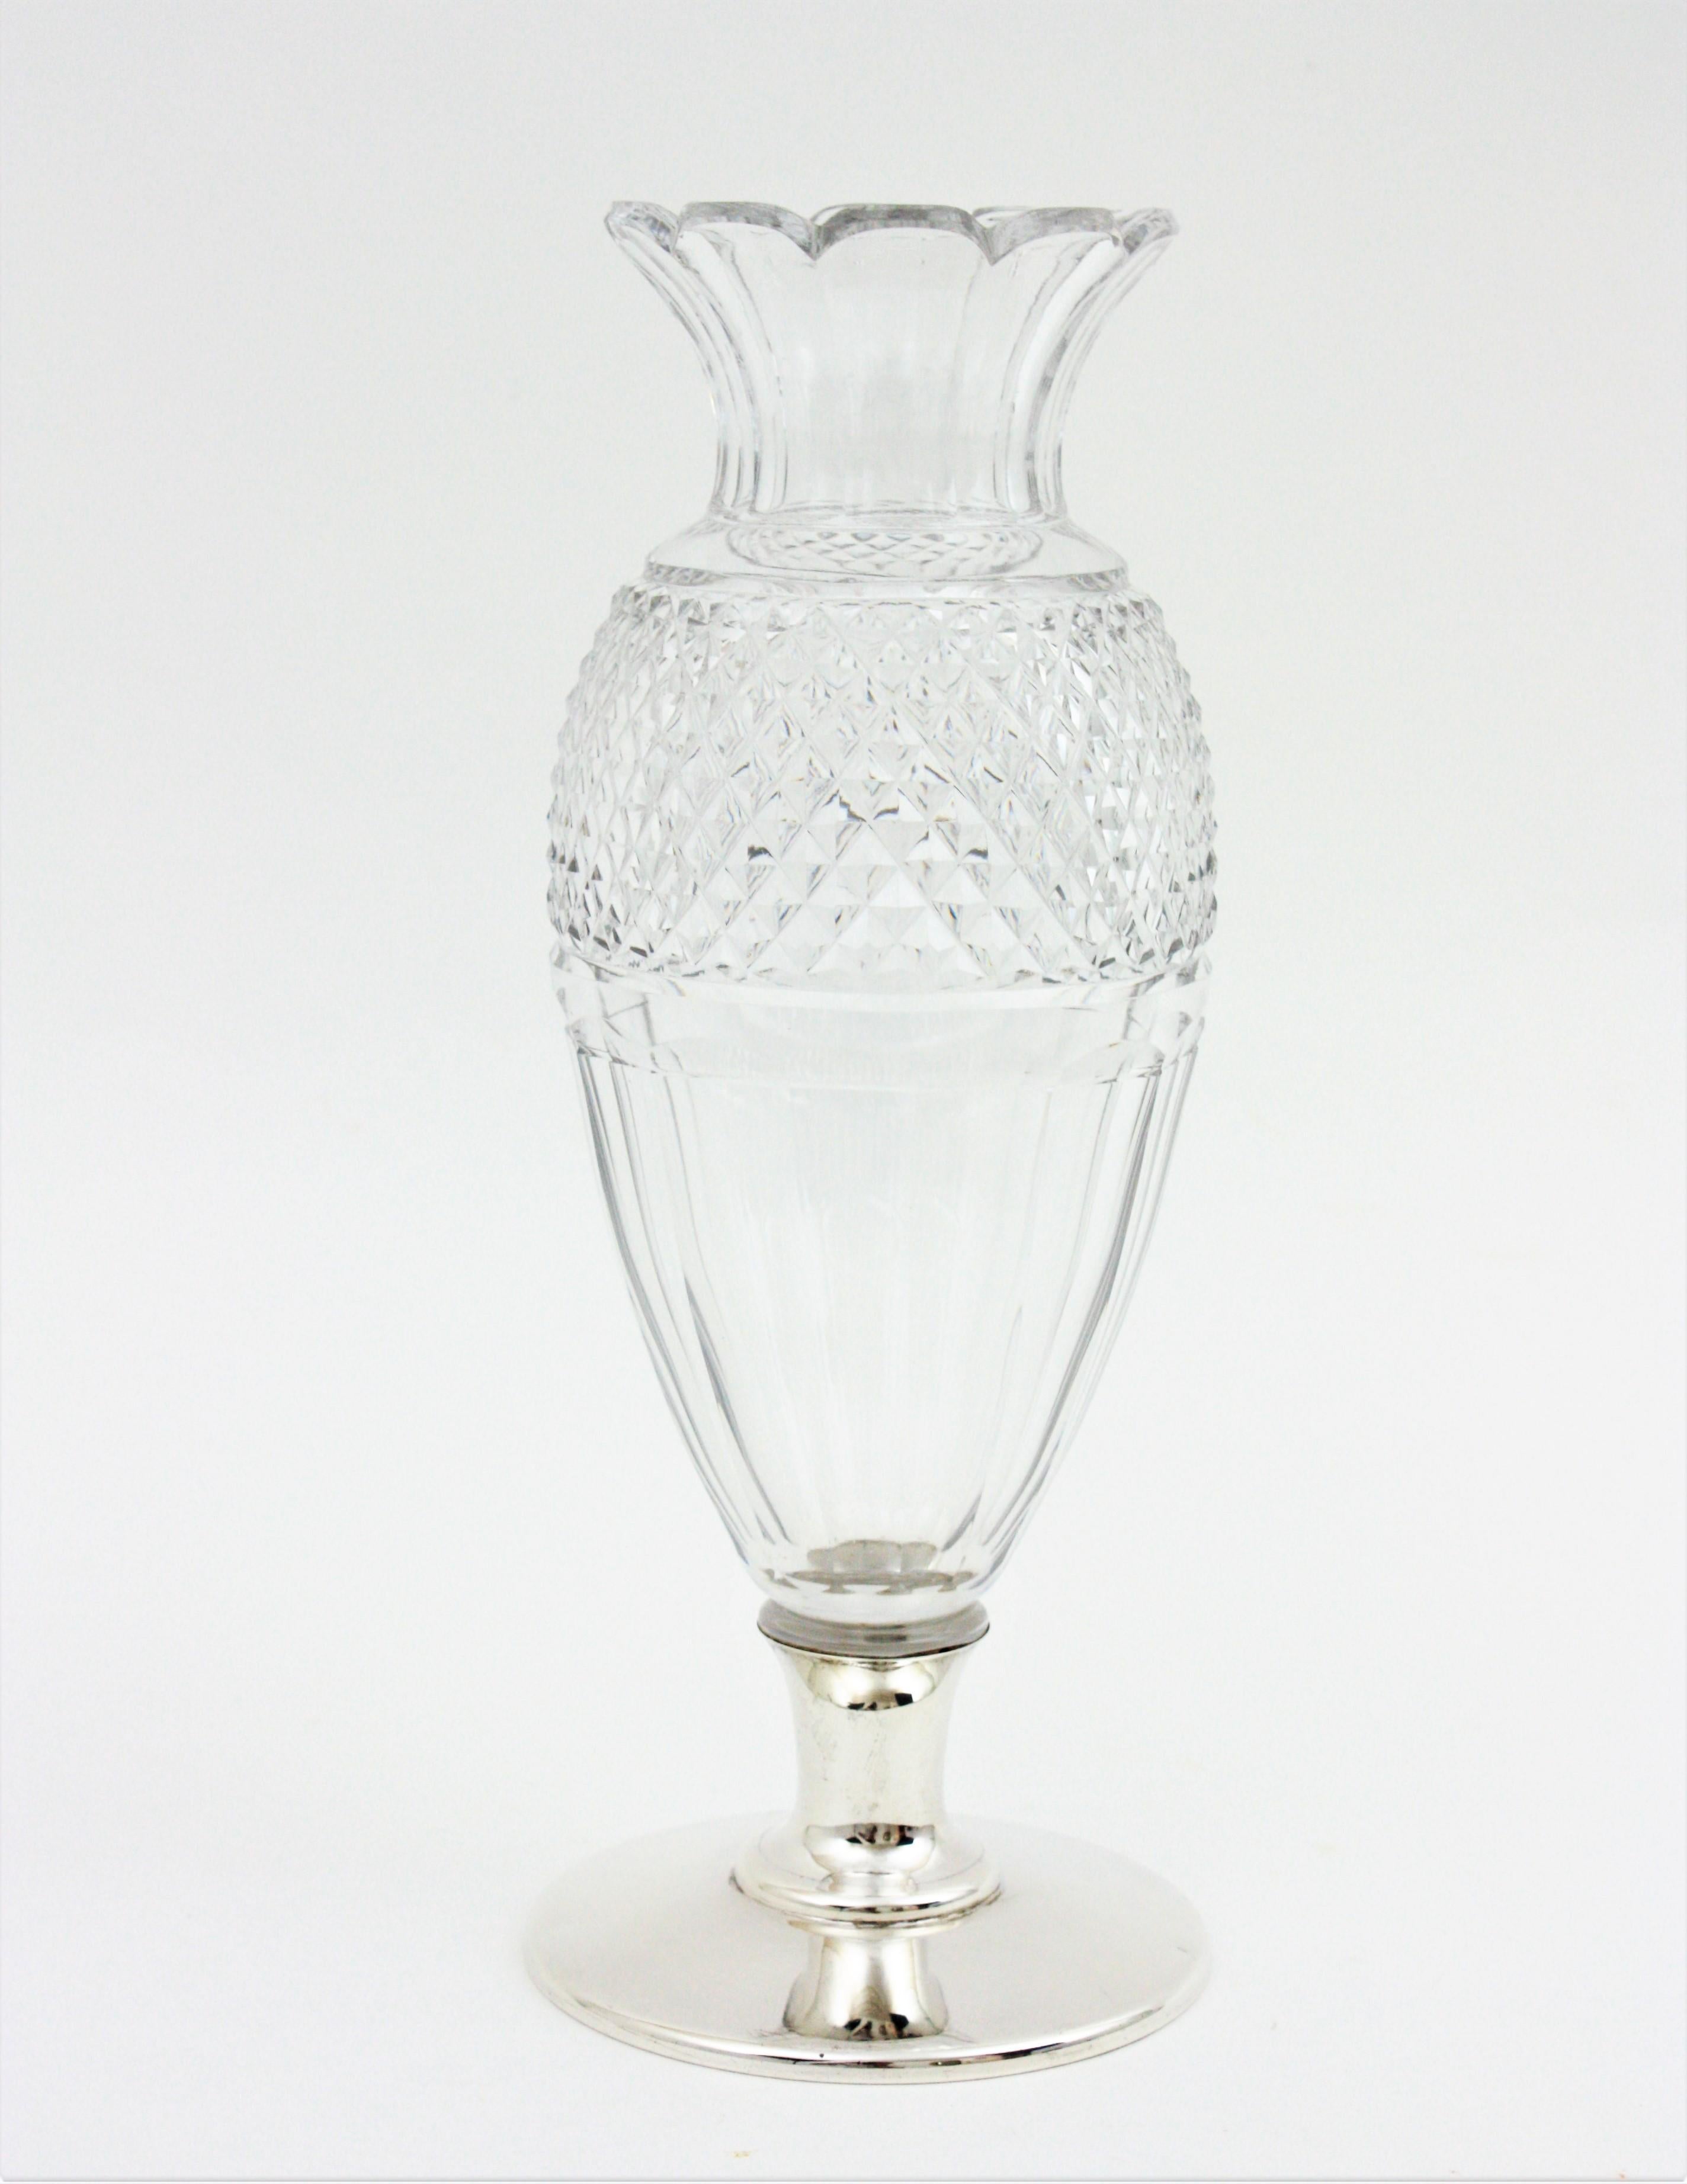 Vase aus geschliffenem Kristall mit Silbersockel, Spanien, 1930er-1940er Jahre.
Elegante, urnenförmige Kristallvase aus dem späten Art déco.
Fein ausgeführt mit sehr detaillierten handgeschliffenen Kristallmustern durch und durch. Er steht auf